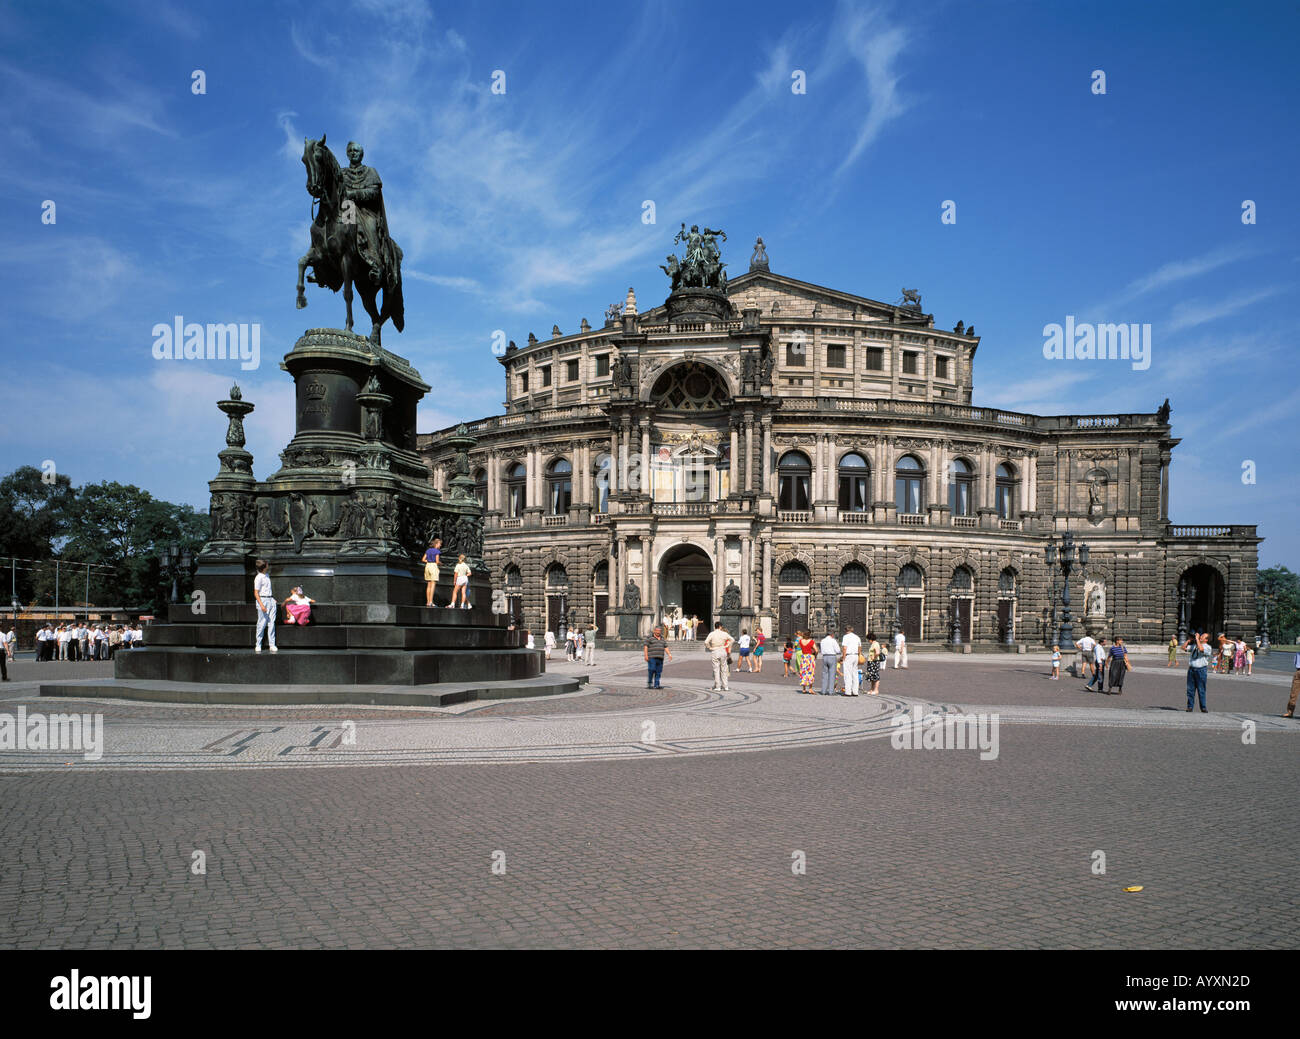 Reiterstandbild, Statue, Reiterdenkmal von Koenig Johann und Semperoper, Dresden, Elbe, Sachsen Stock Photo